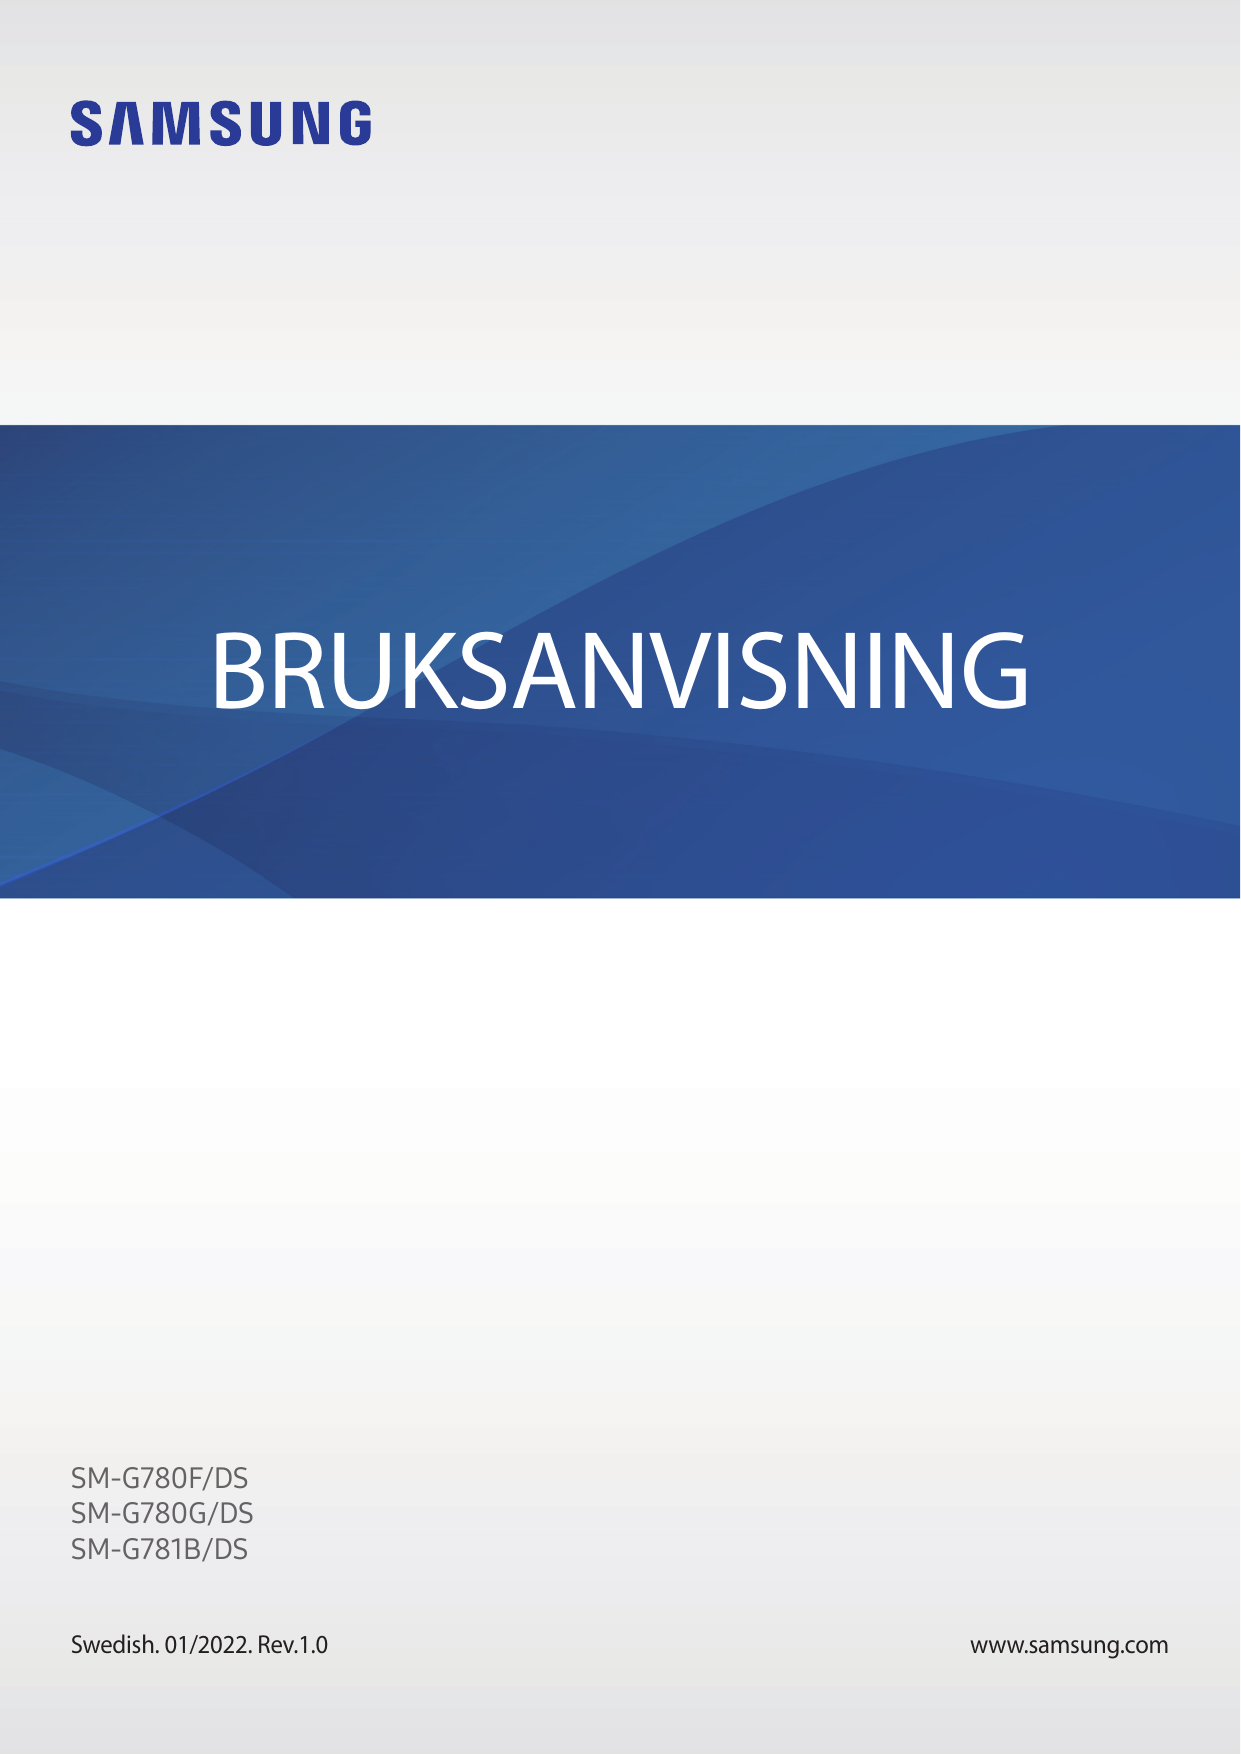 BRUKSANVISNINGSM-G780F/DSSM-G780G/DSSM-G781B/DSSwedish. 01/2022. Rev.1.0www.samsung.com